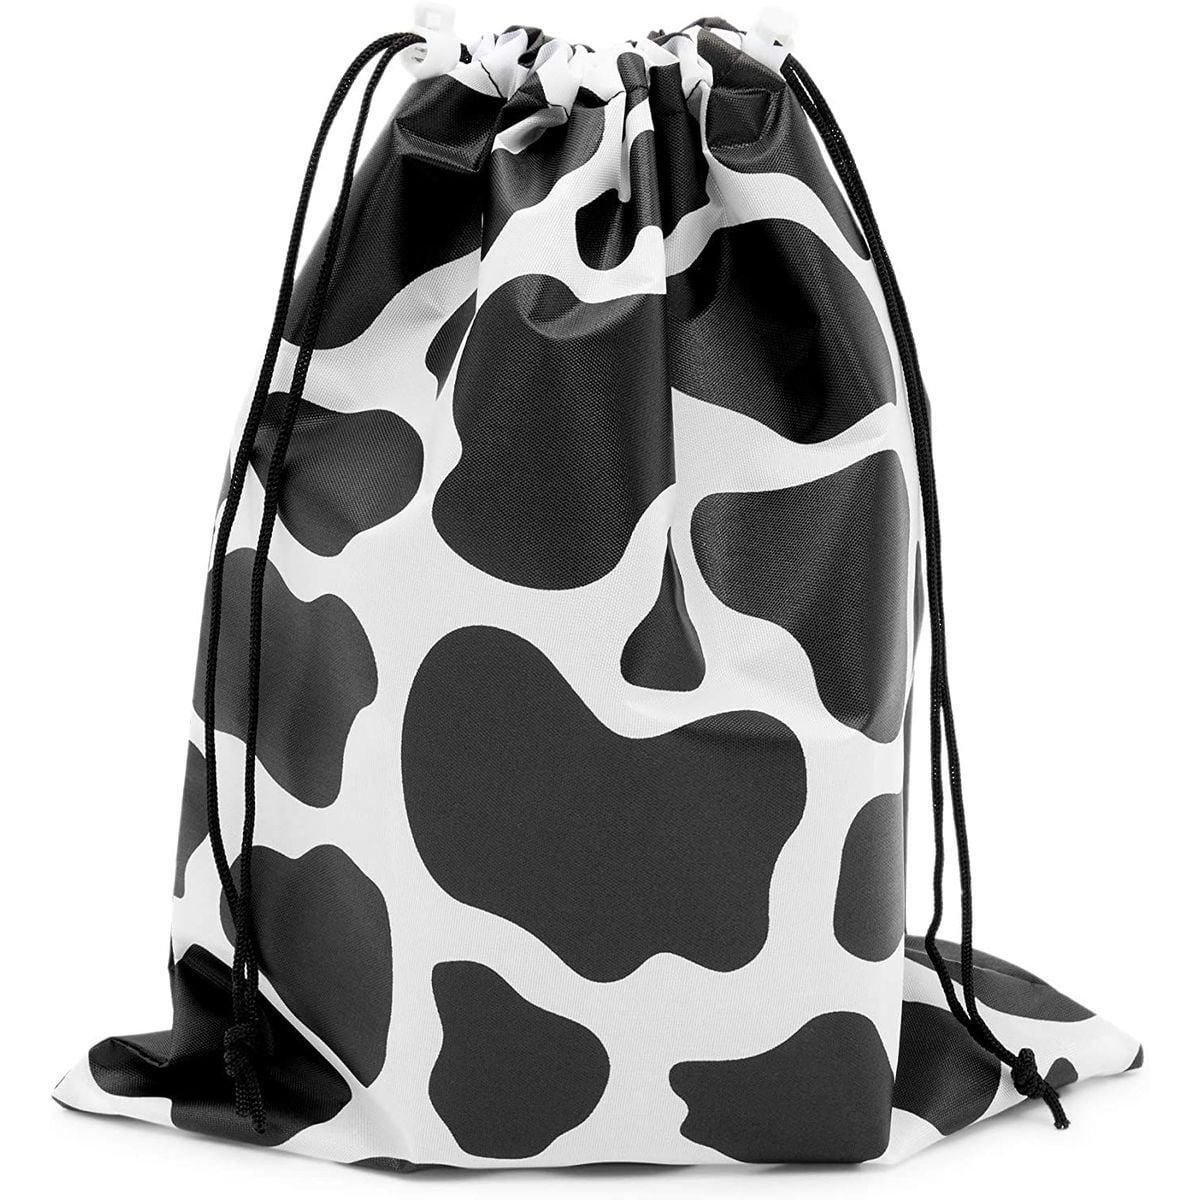 Hallmark Party Cow Cows Gift Favor Bags 10 pk 